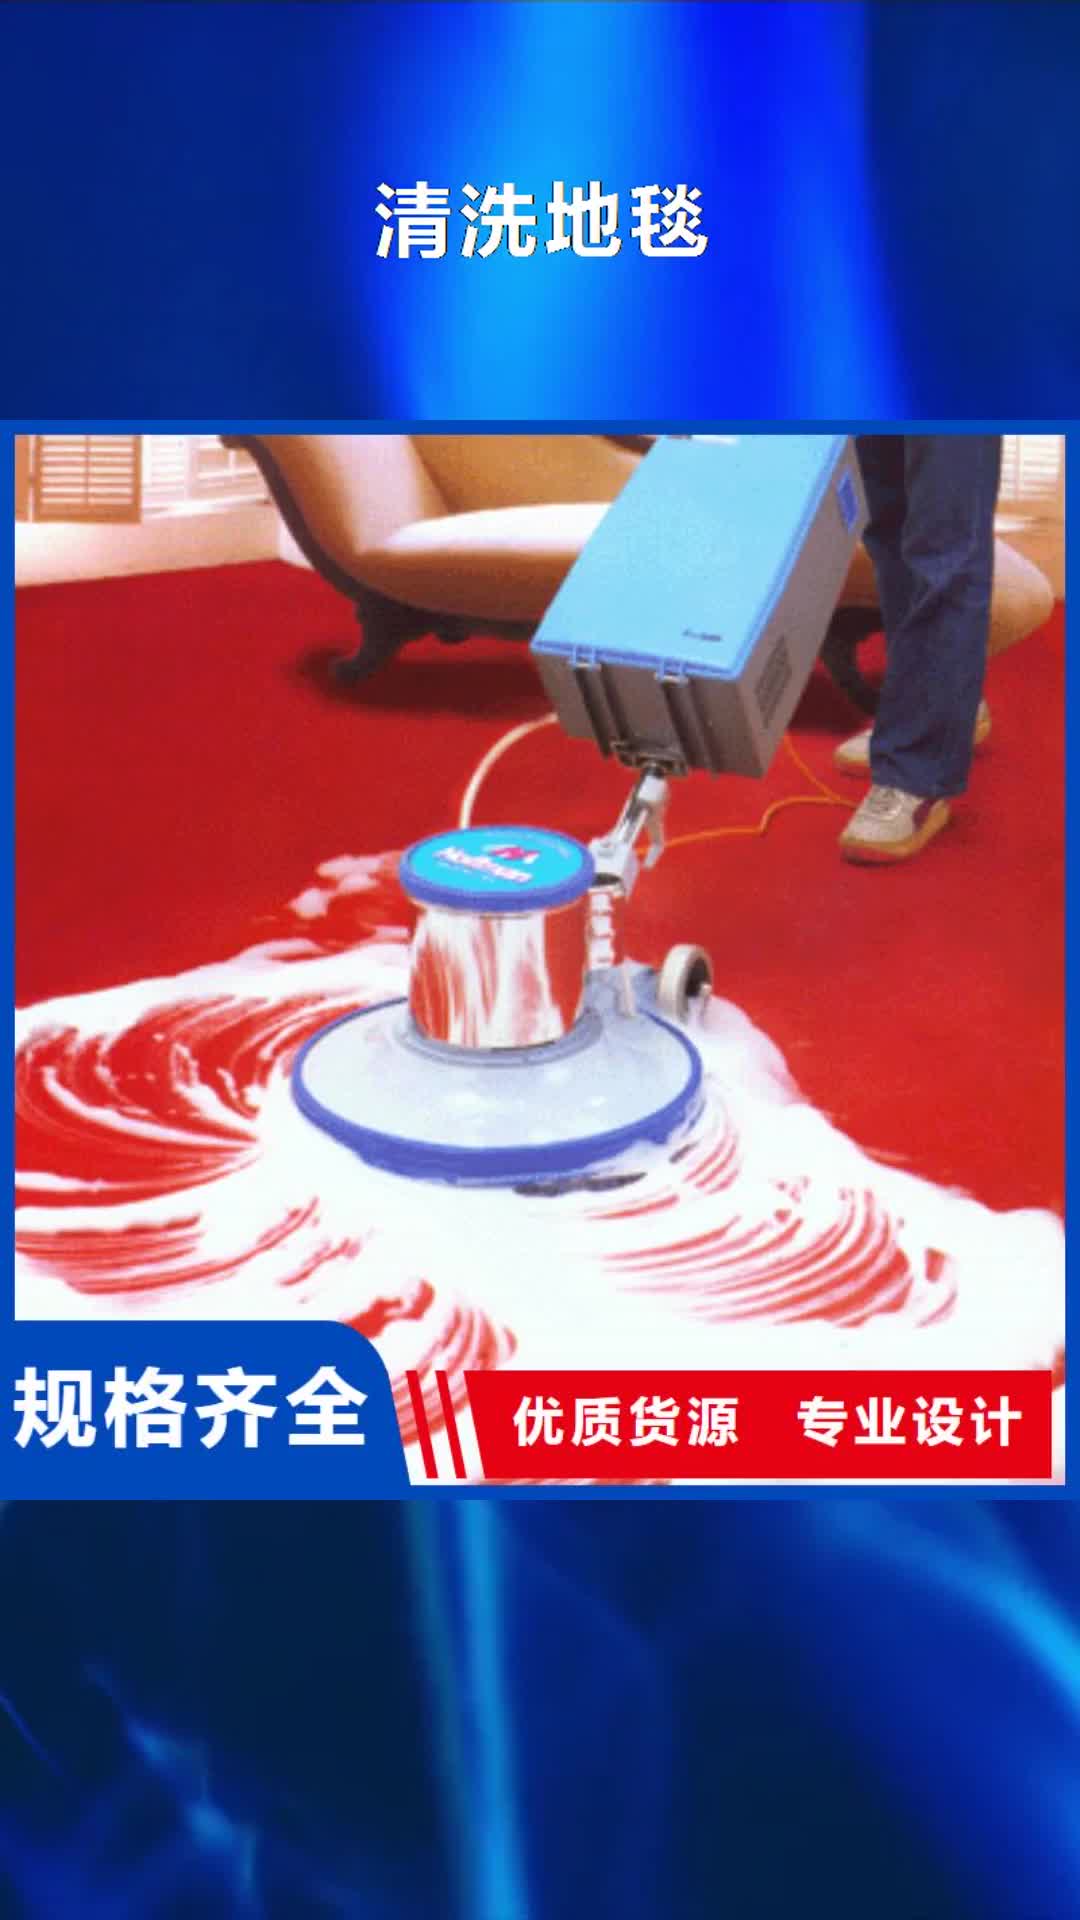 宁波【清洗地毯】, 朝阳区环氧地坪施工极速发货